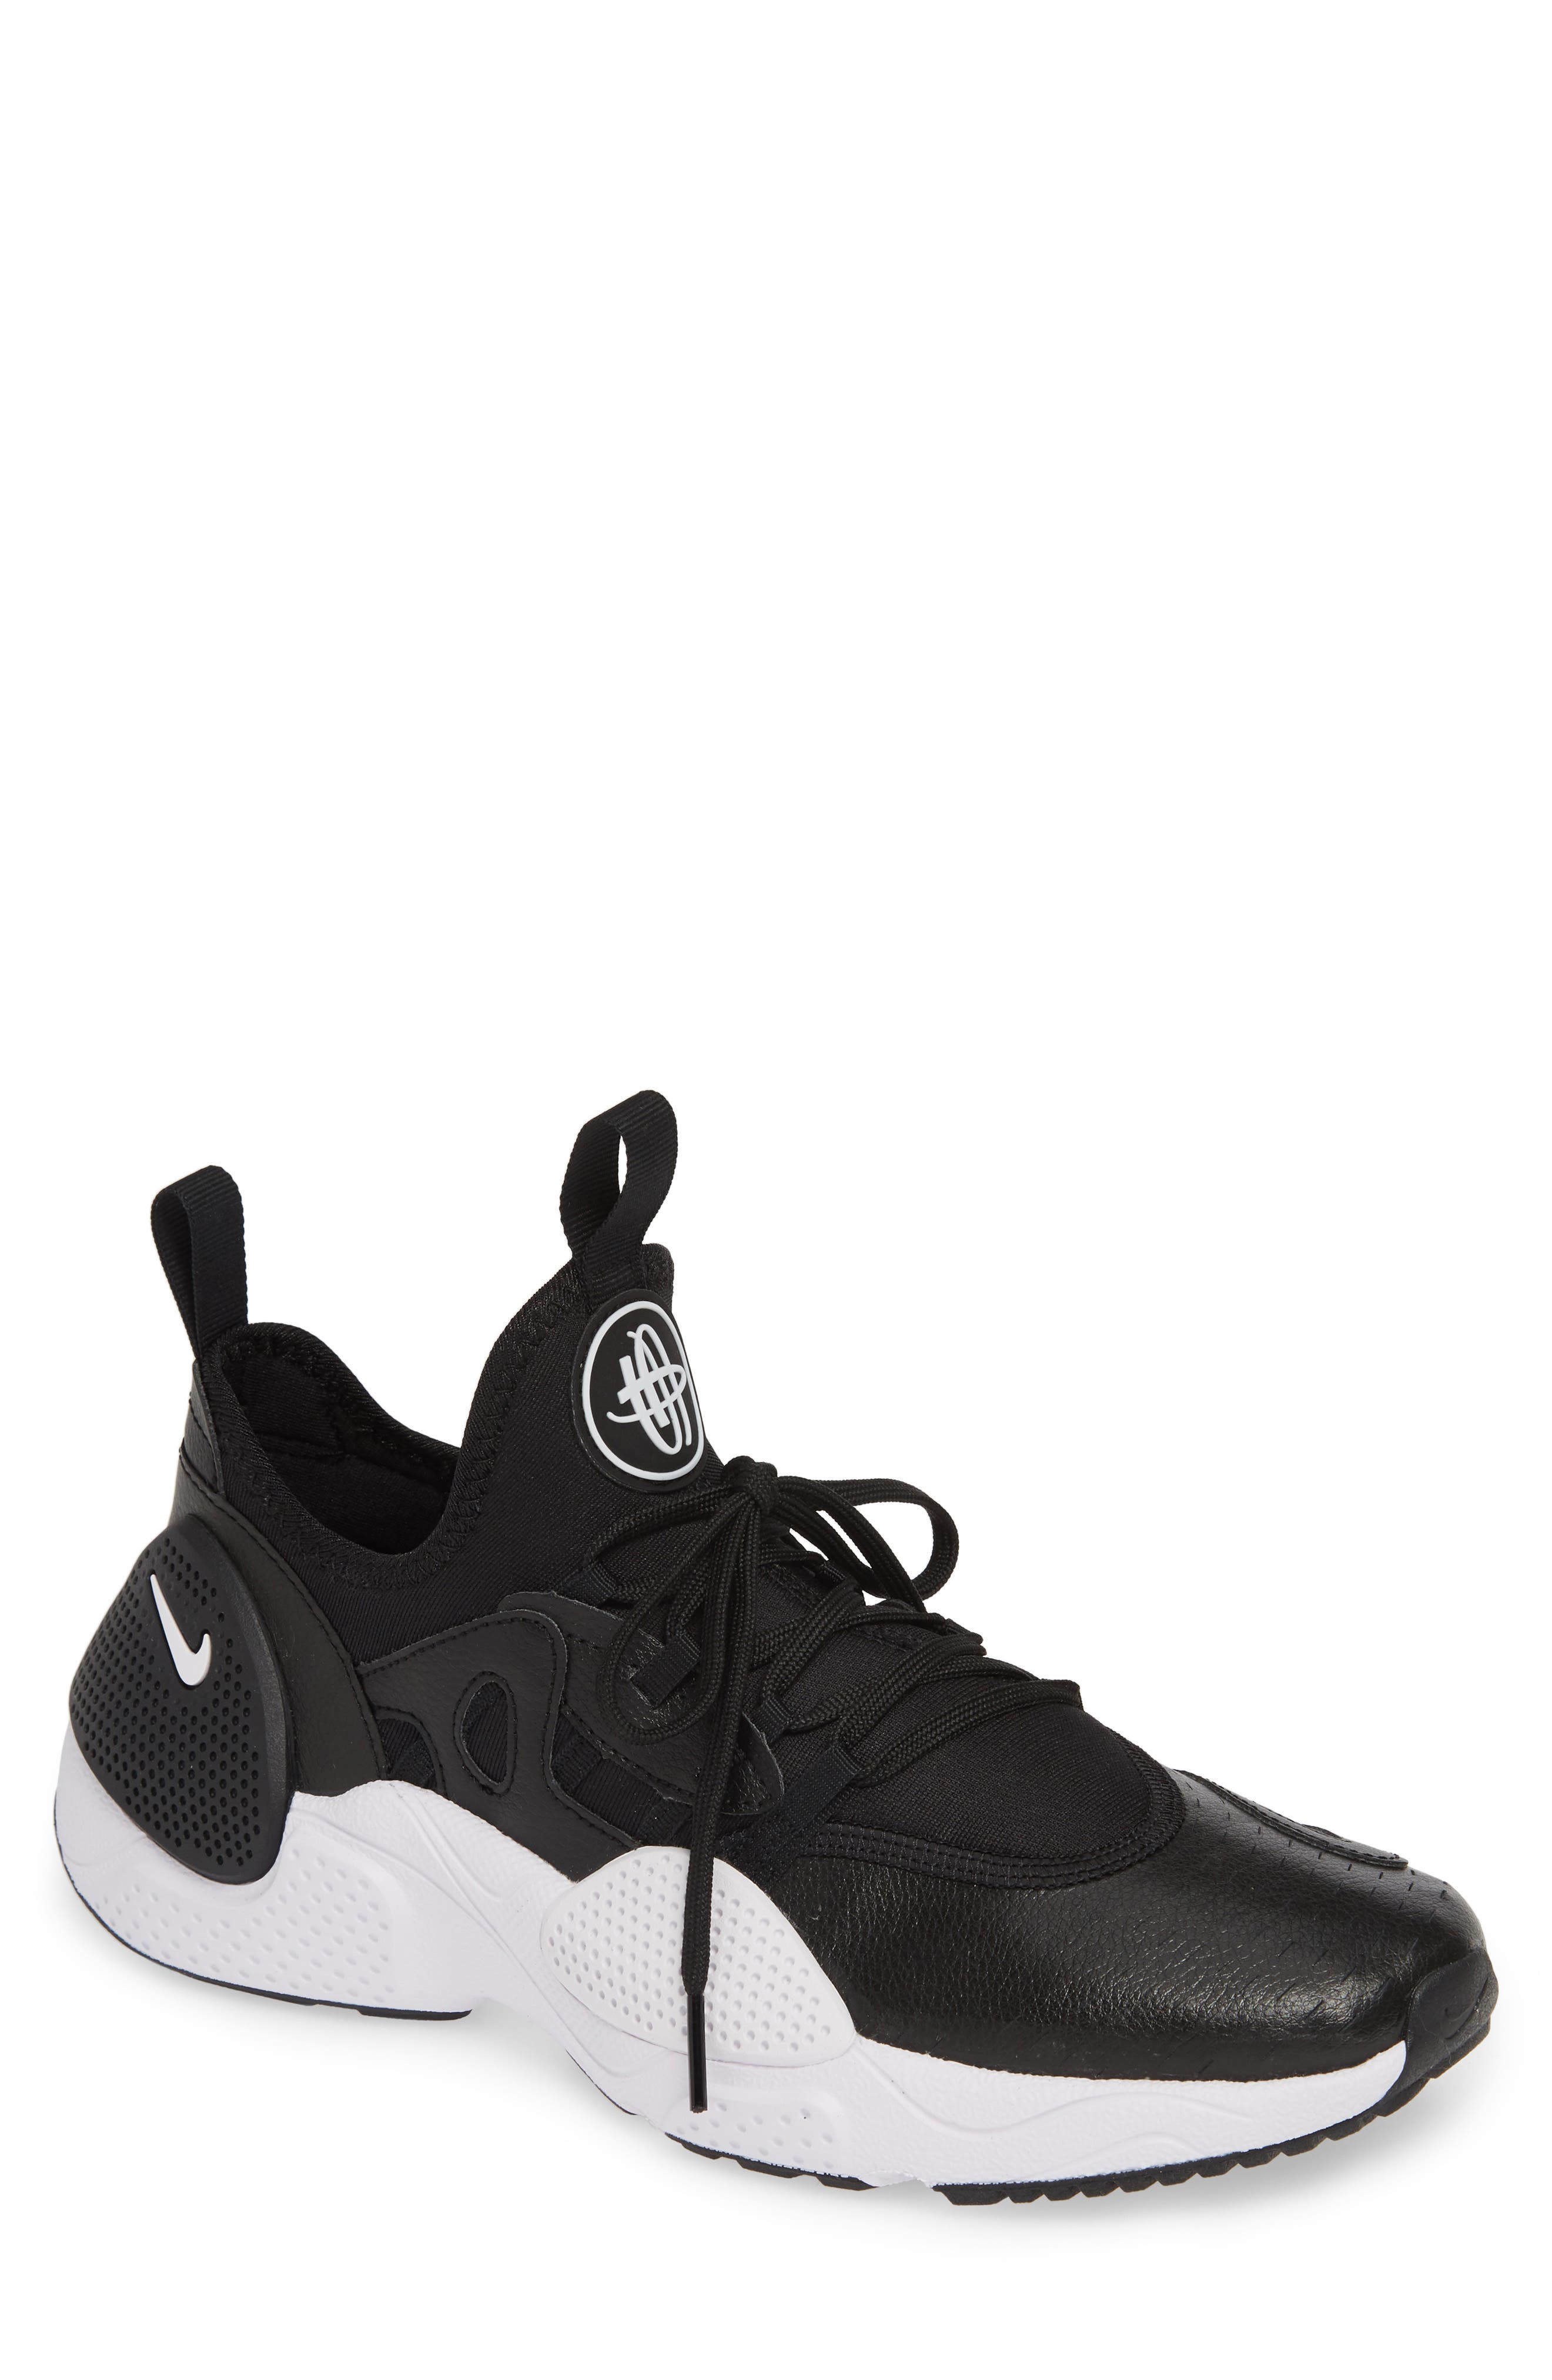 huarache shoes basketball